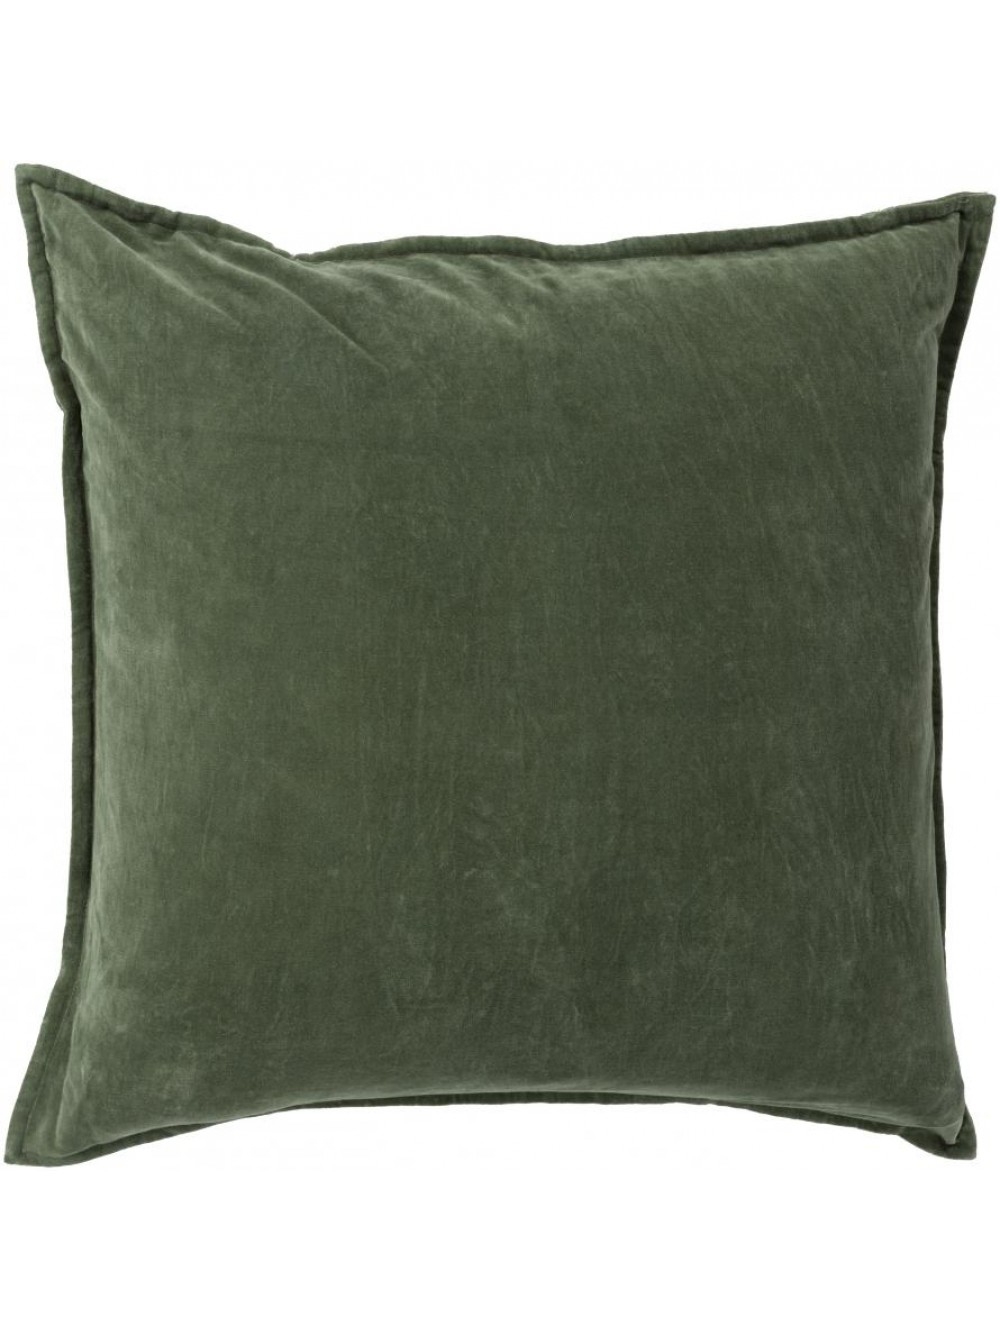 Maxen Pillow -  Dark Moss  - 18" x 18" - Down Filled - Image 0